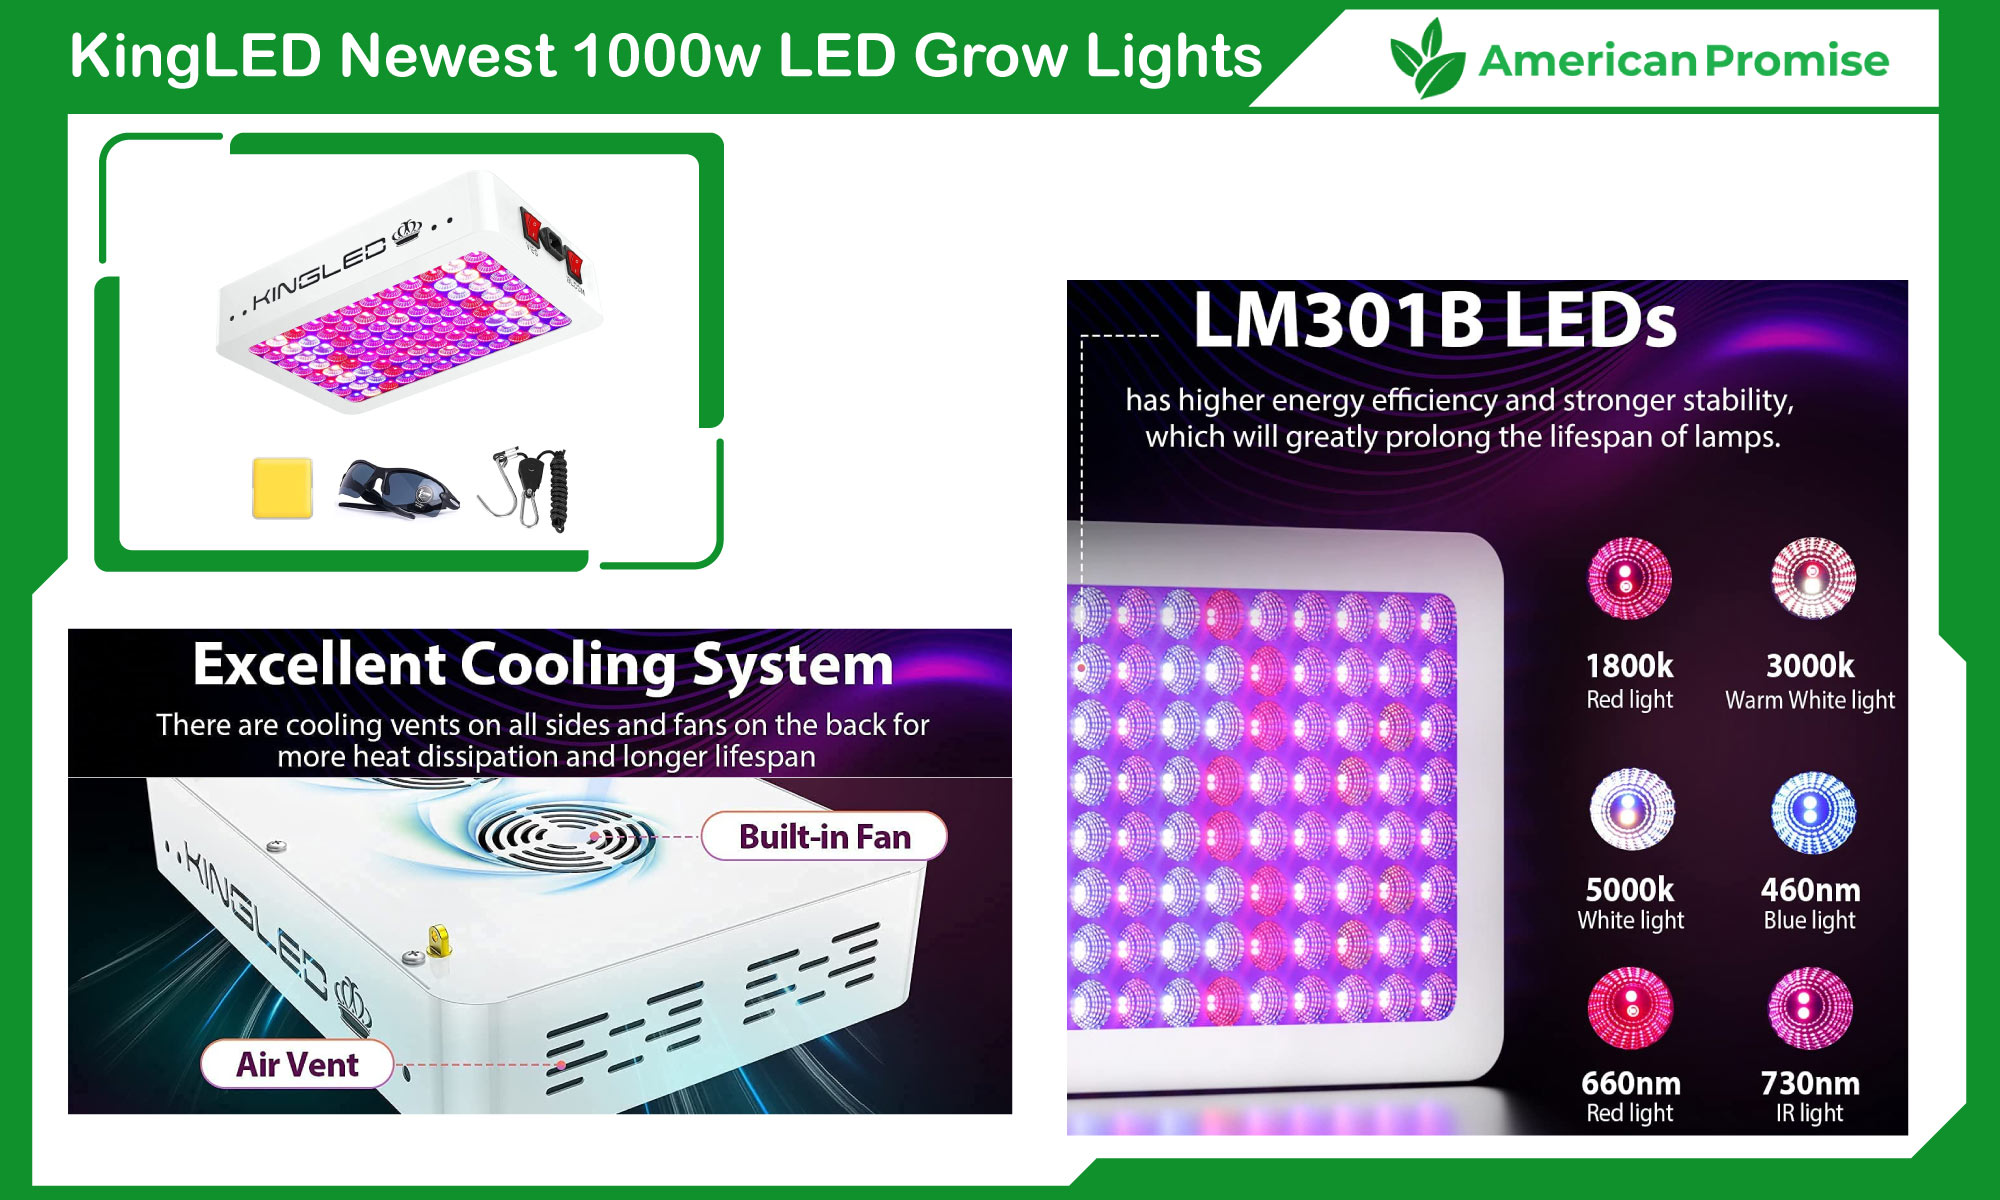 KingLED Newest 1000w LED Grow Lights